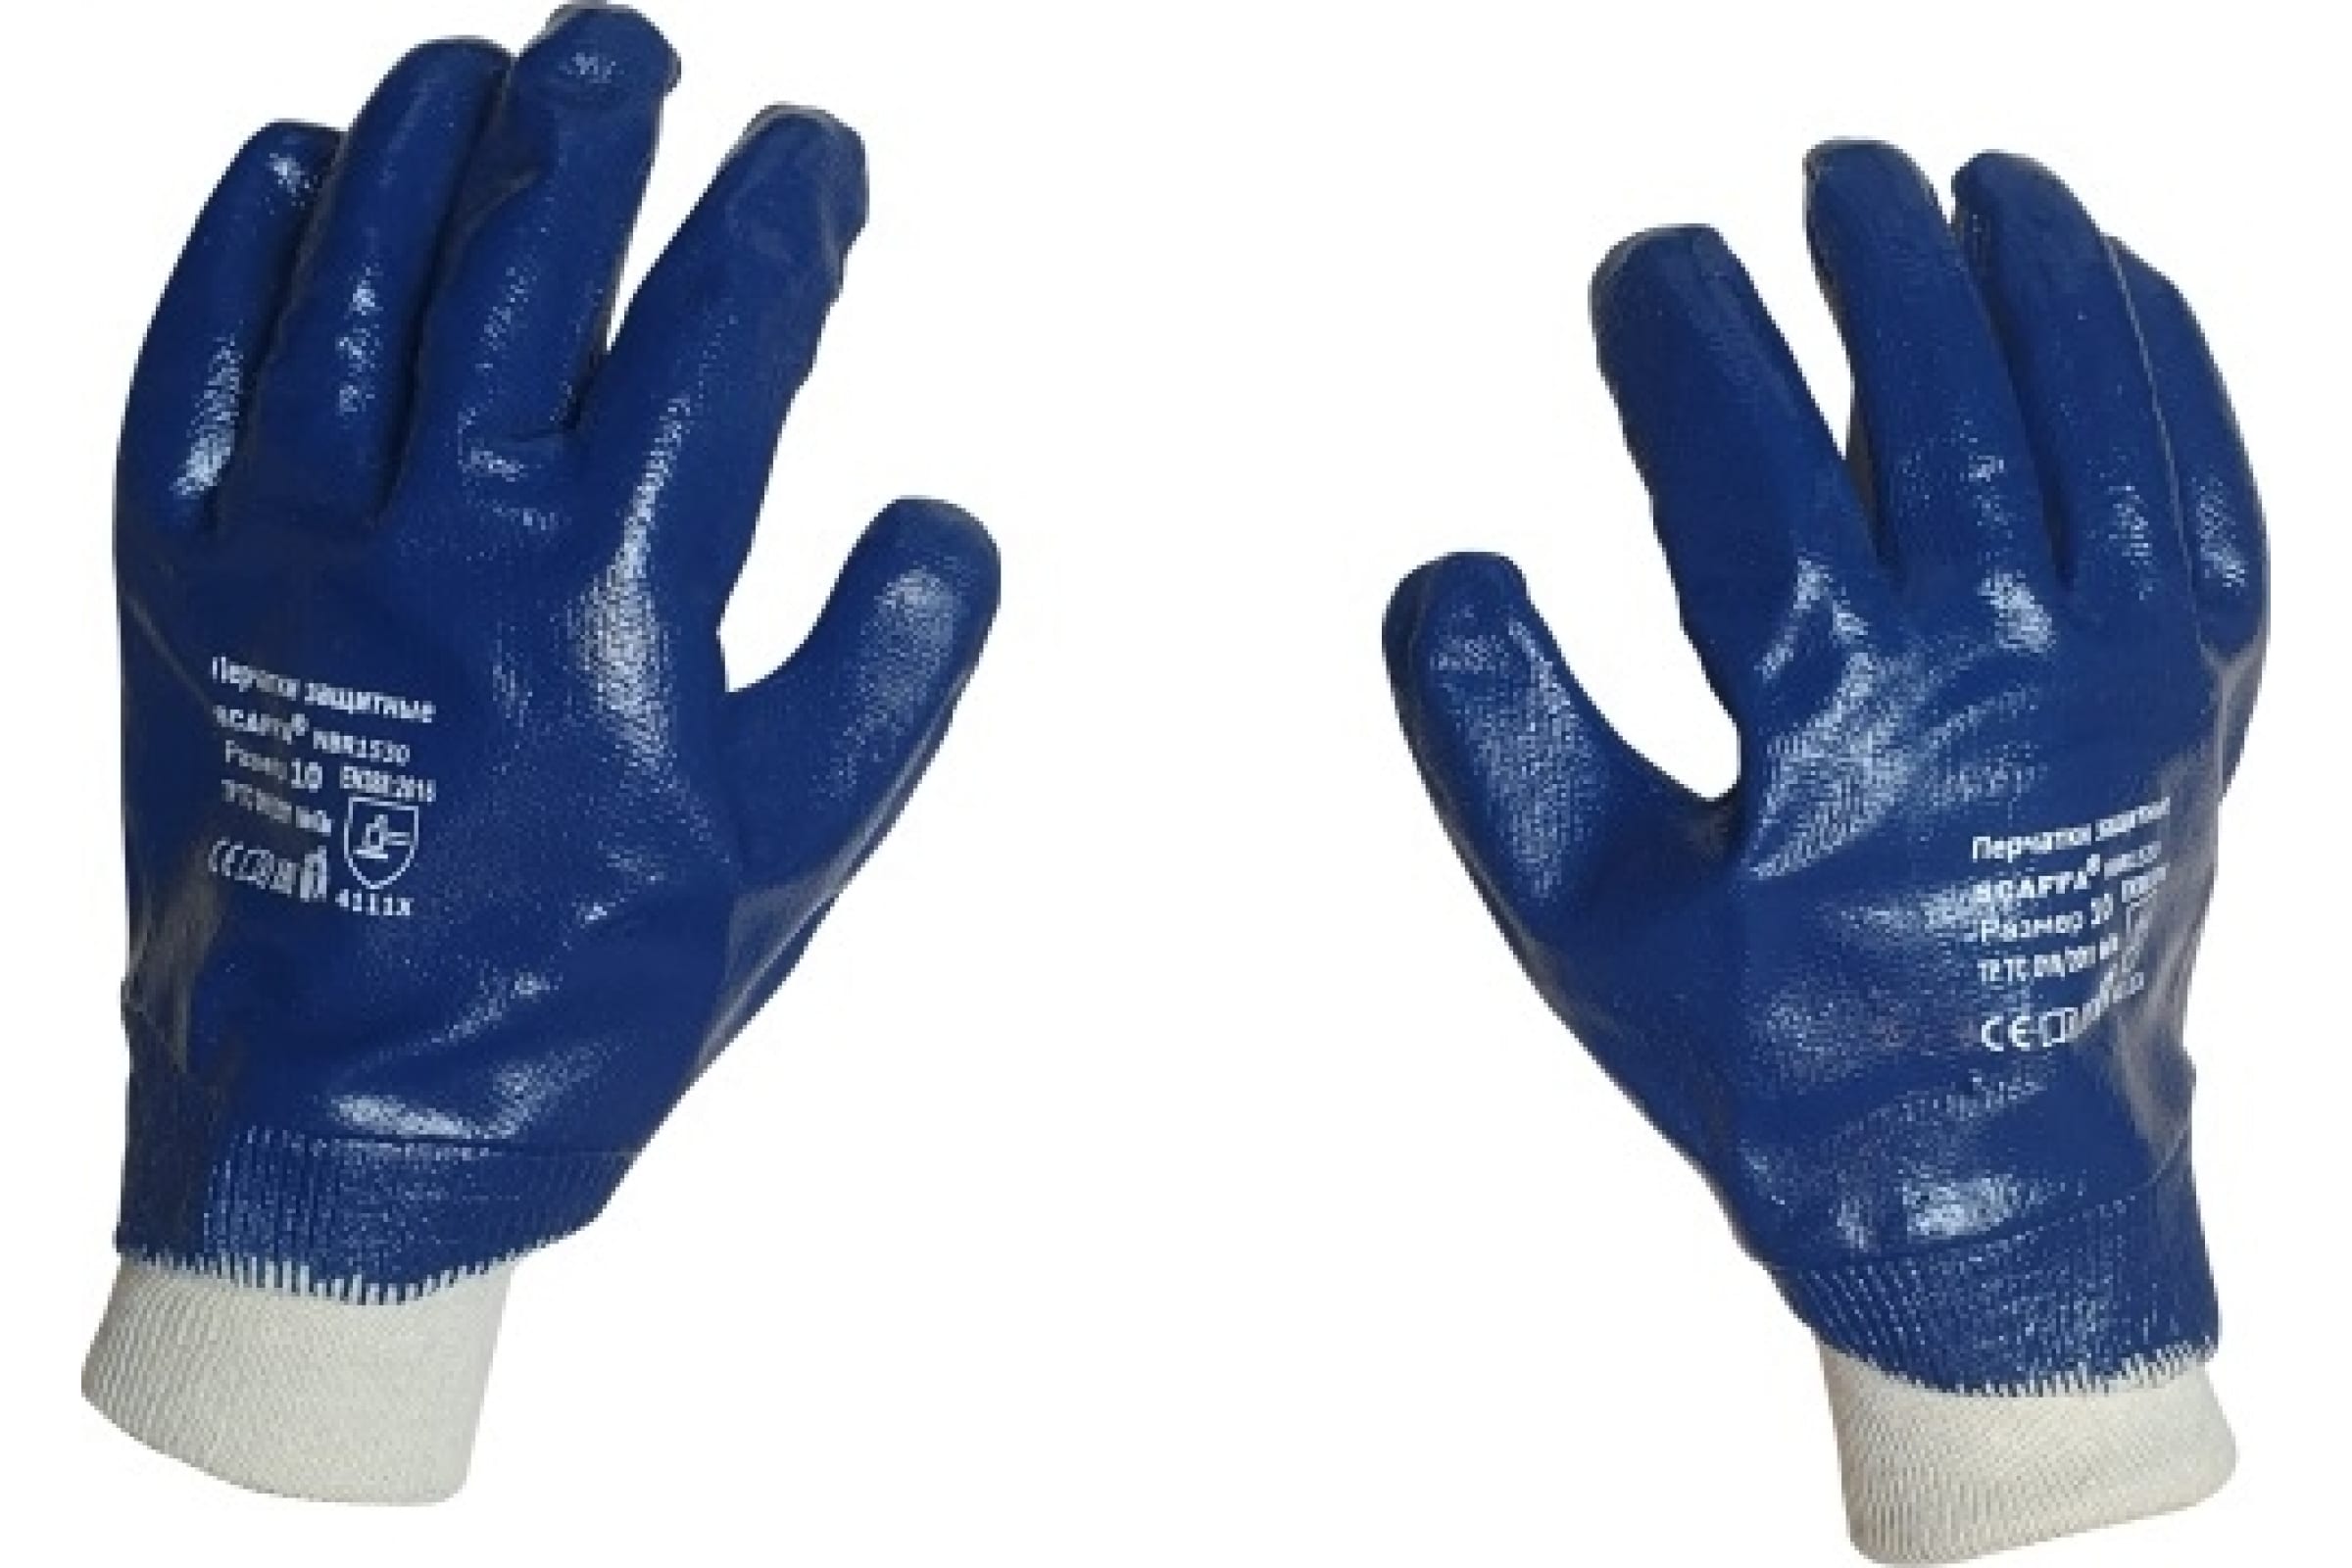 Scaffa перчатки с полным нитриловым обливом NBR1530 размер 10 00-00012457